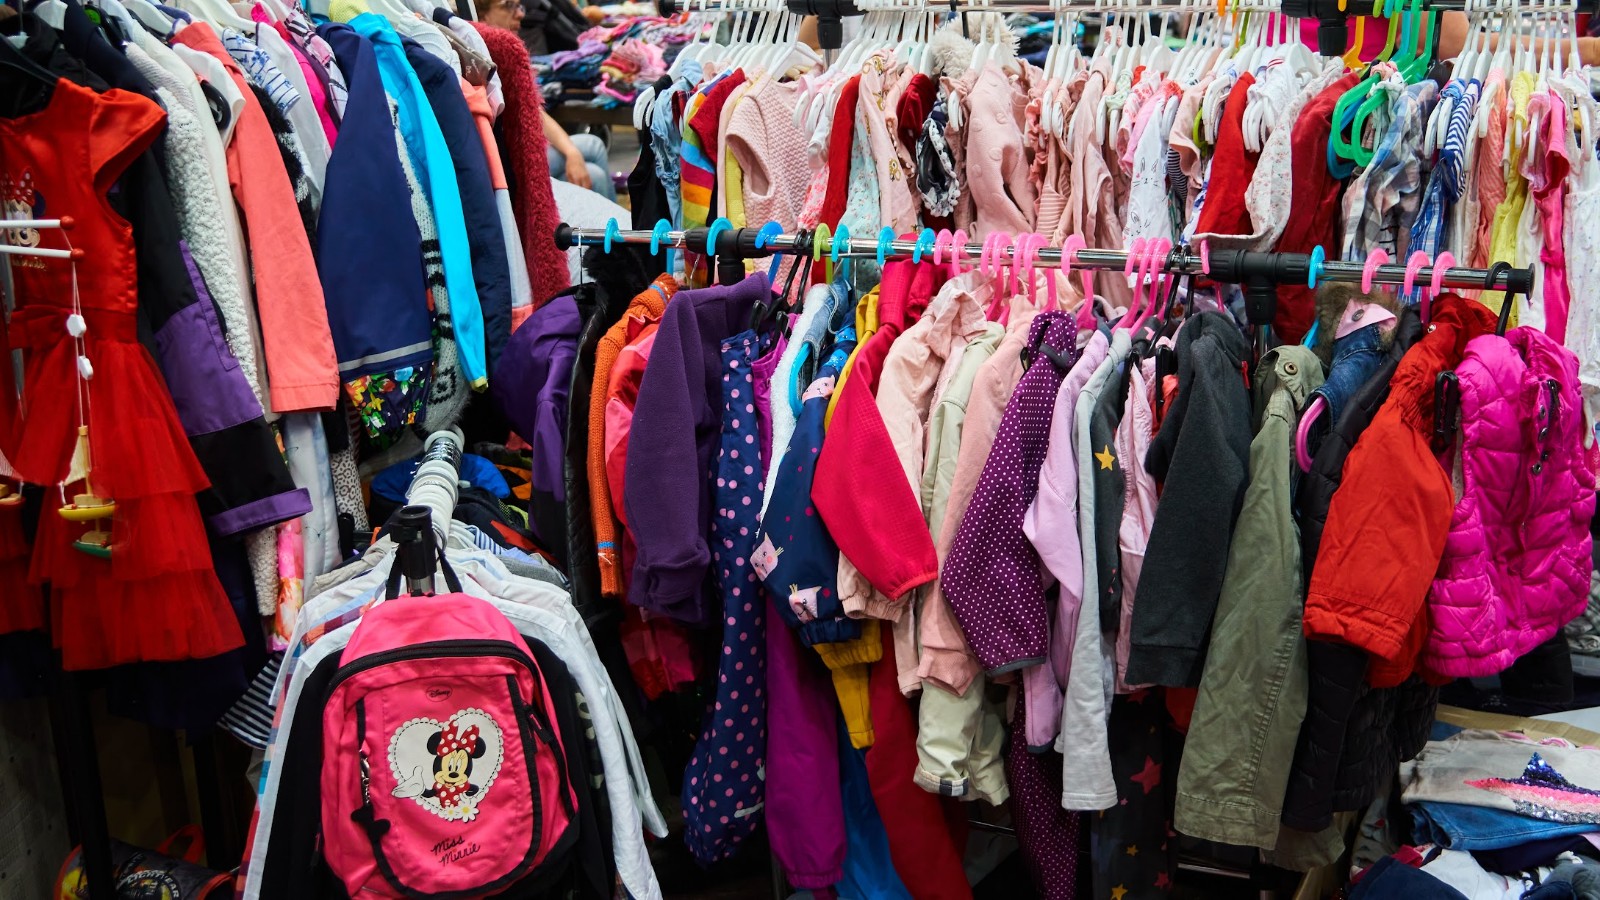 piccolino*-Kinderflohmarkt, bunte Kinderbekleidung hängt auf einem Garderobenständer